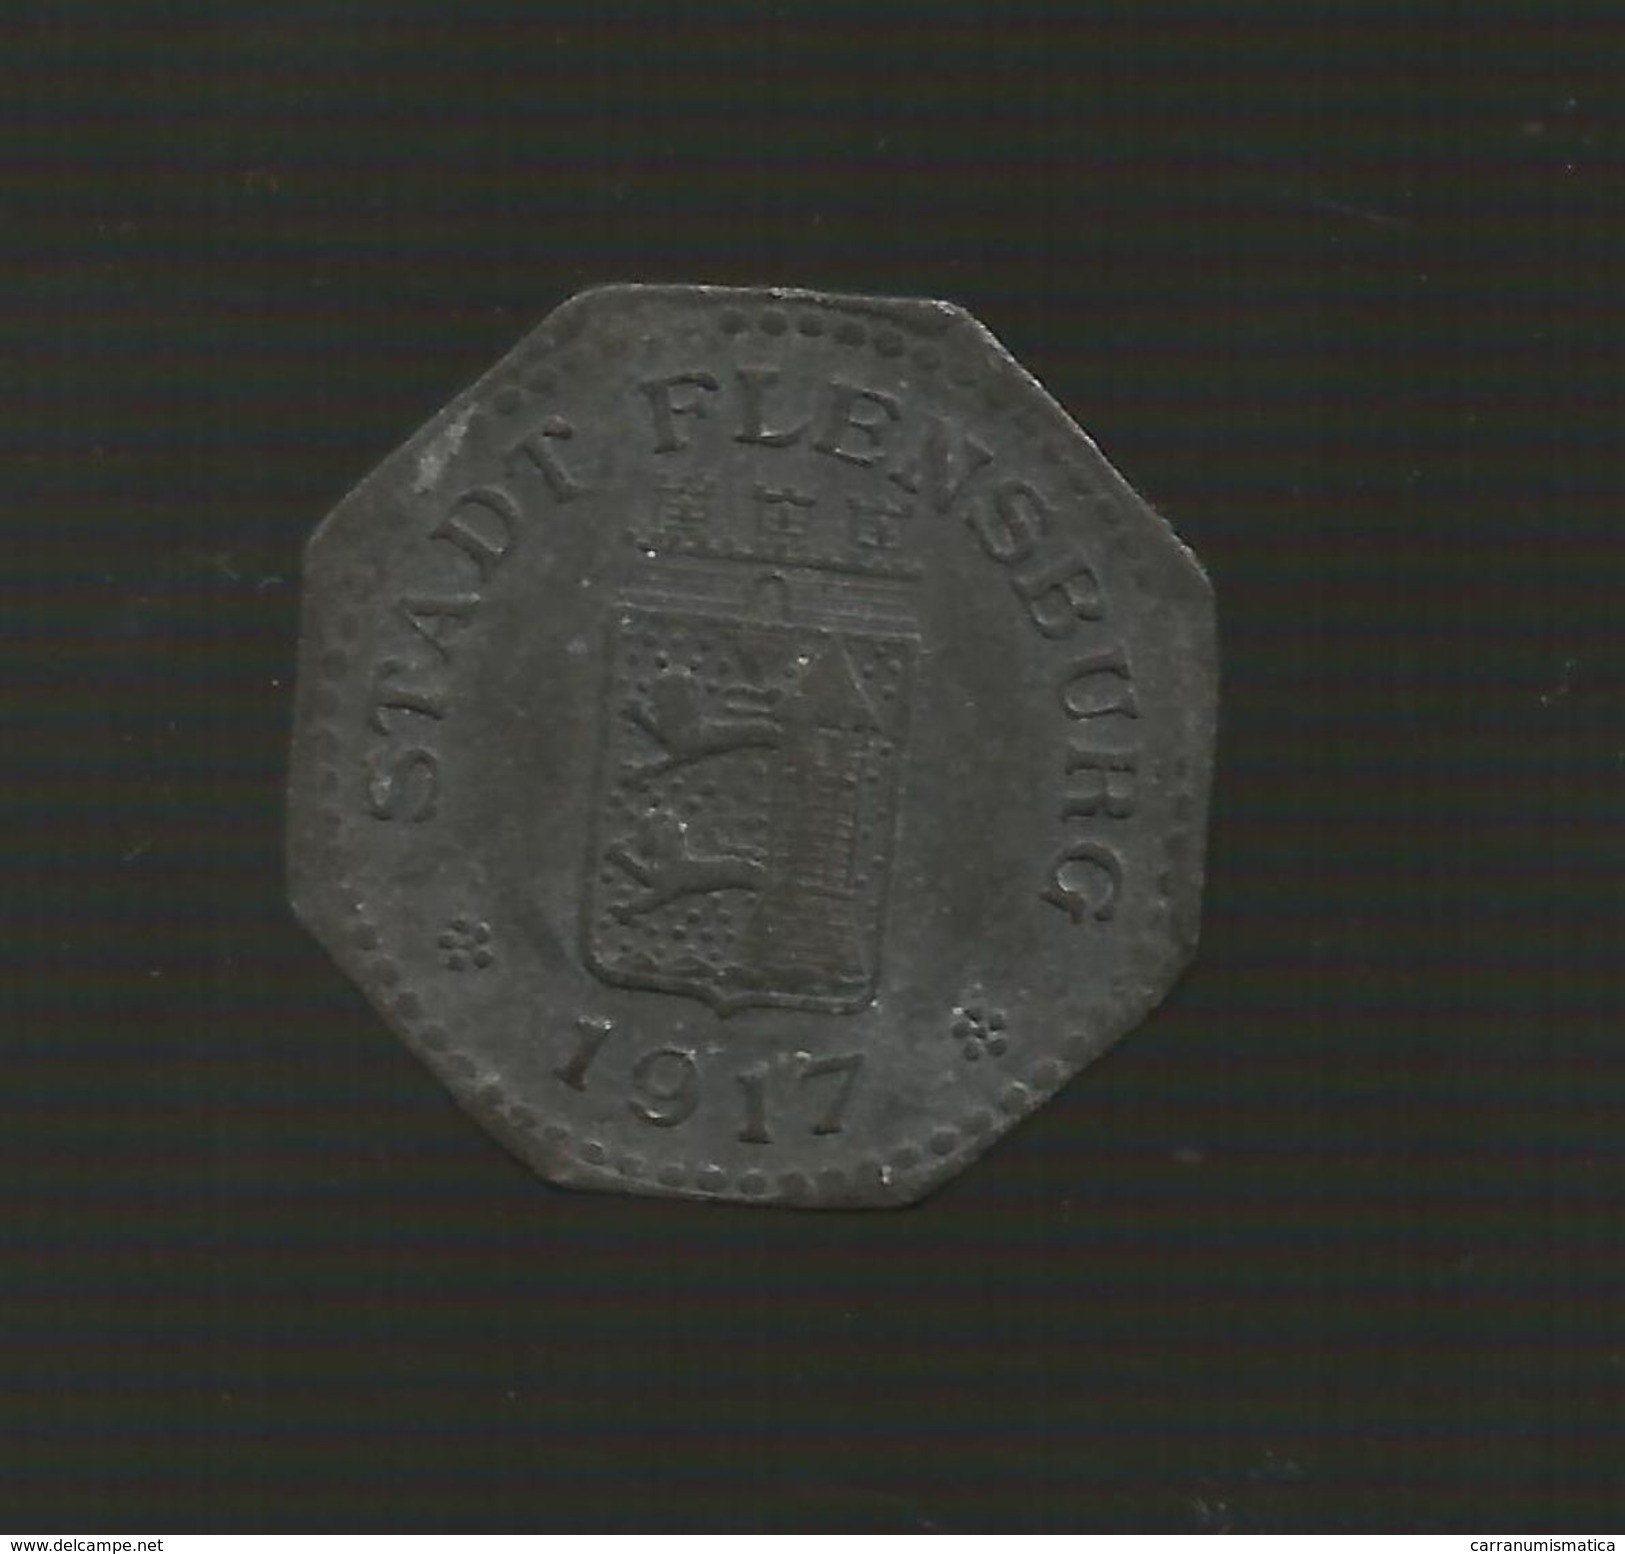 DEUTSCHLAND / GERMANY - NOTGELD - Stadt FLENSBURG - 10 Pfennig (1918) Zink / Zinc / Zinco - Monetary/Of Necessity